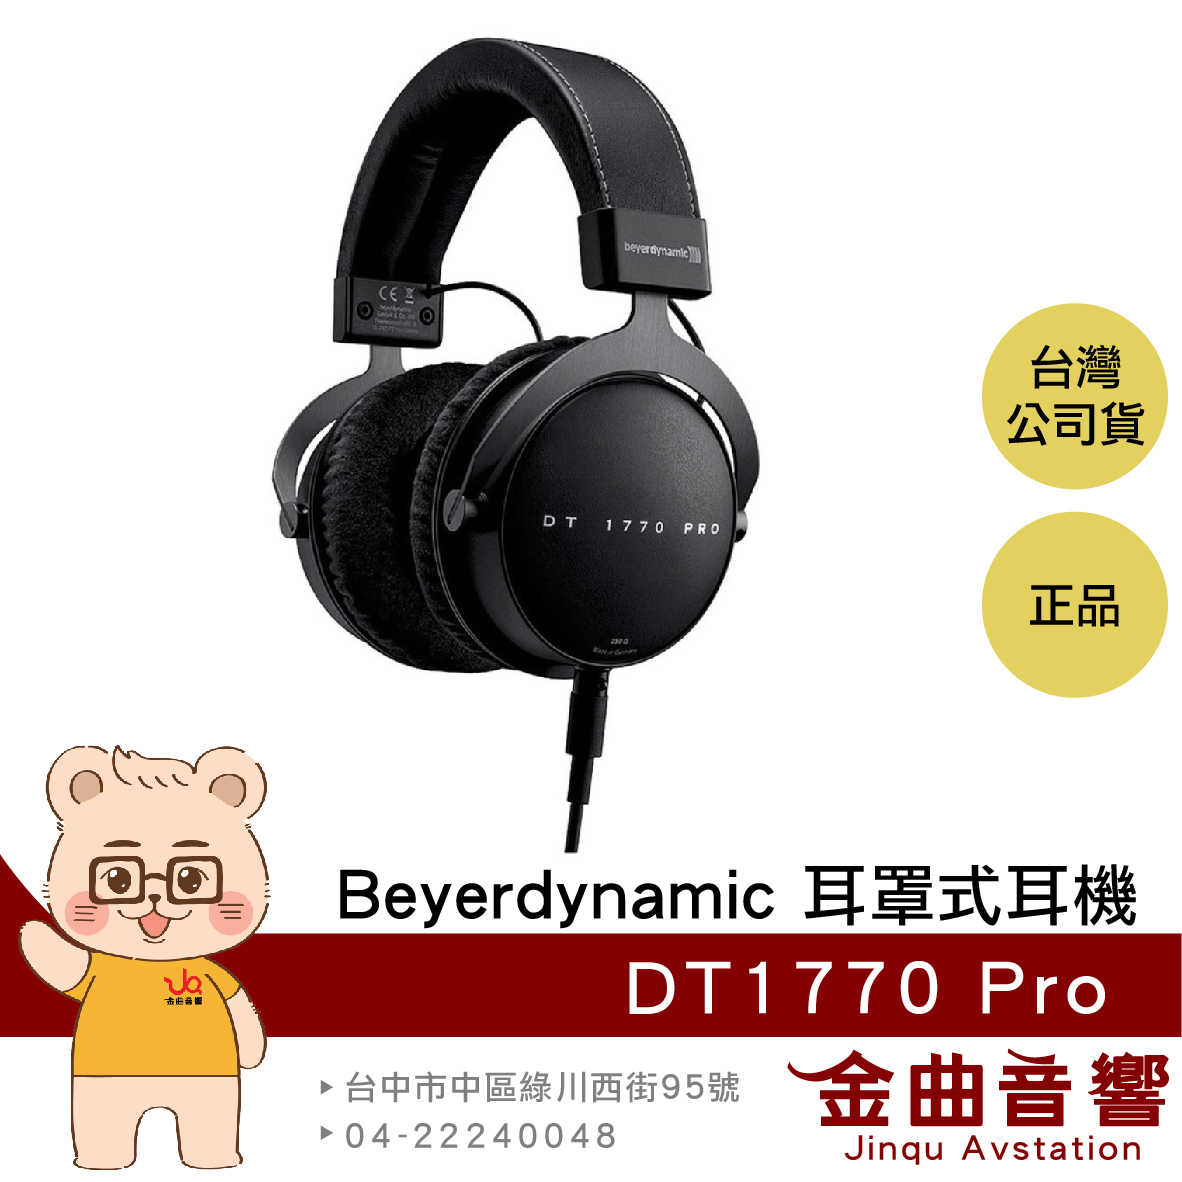 【福利機】Beyerdynamic 拜耳 DT1770 PRO 旗艦 專業 監聽 耳罩式耳機 | 金曲音響